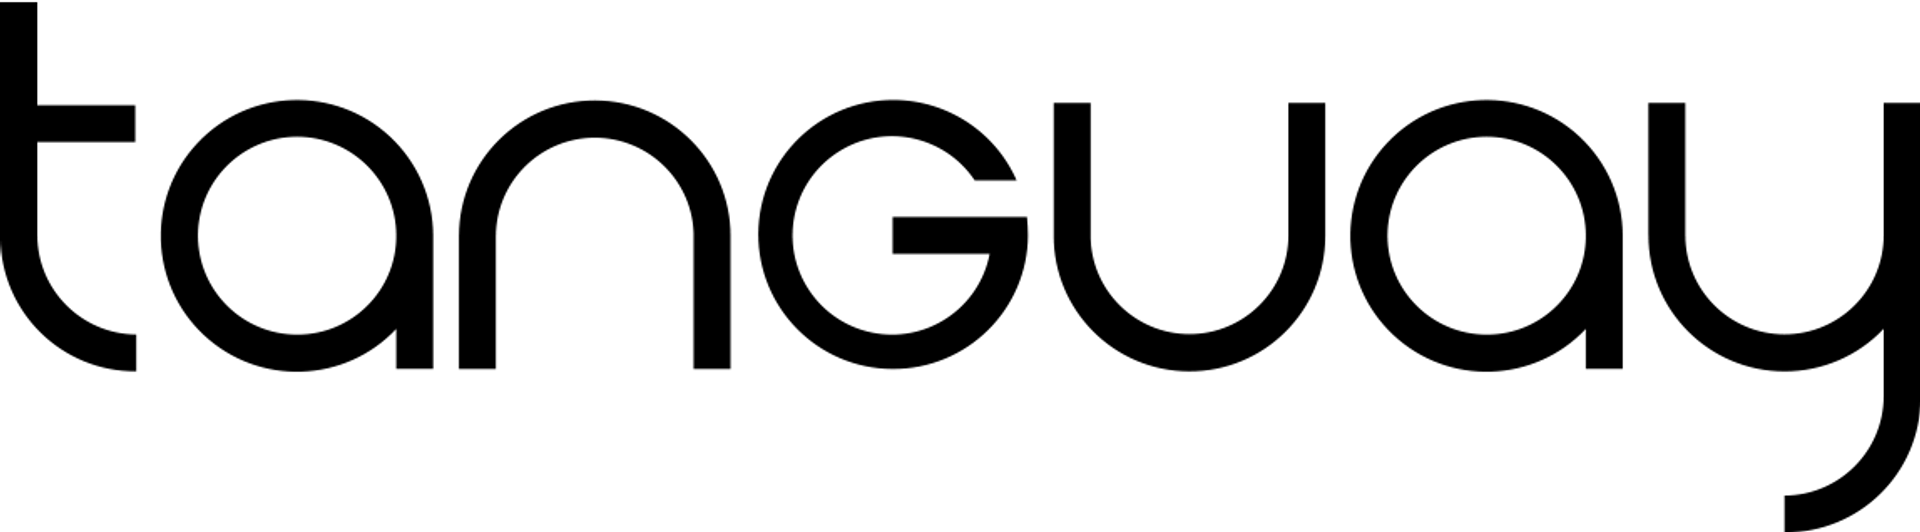 TANGUAY logo de circulaire